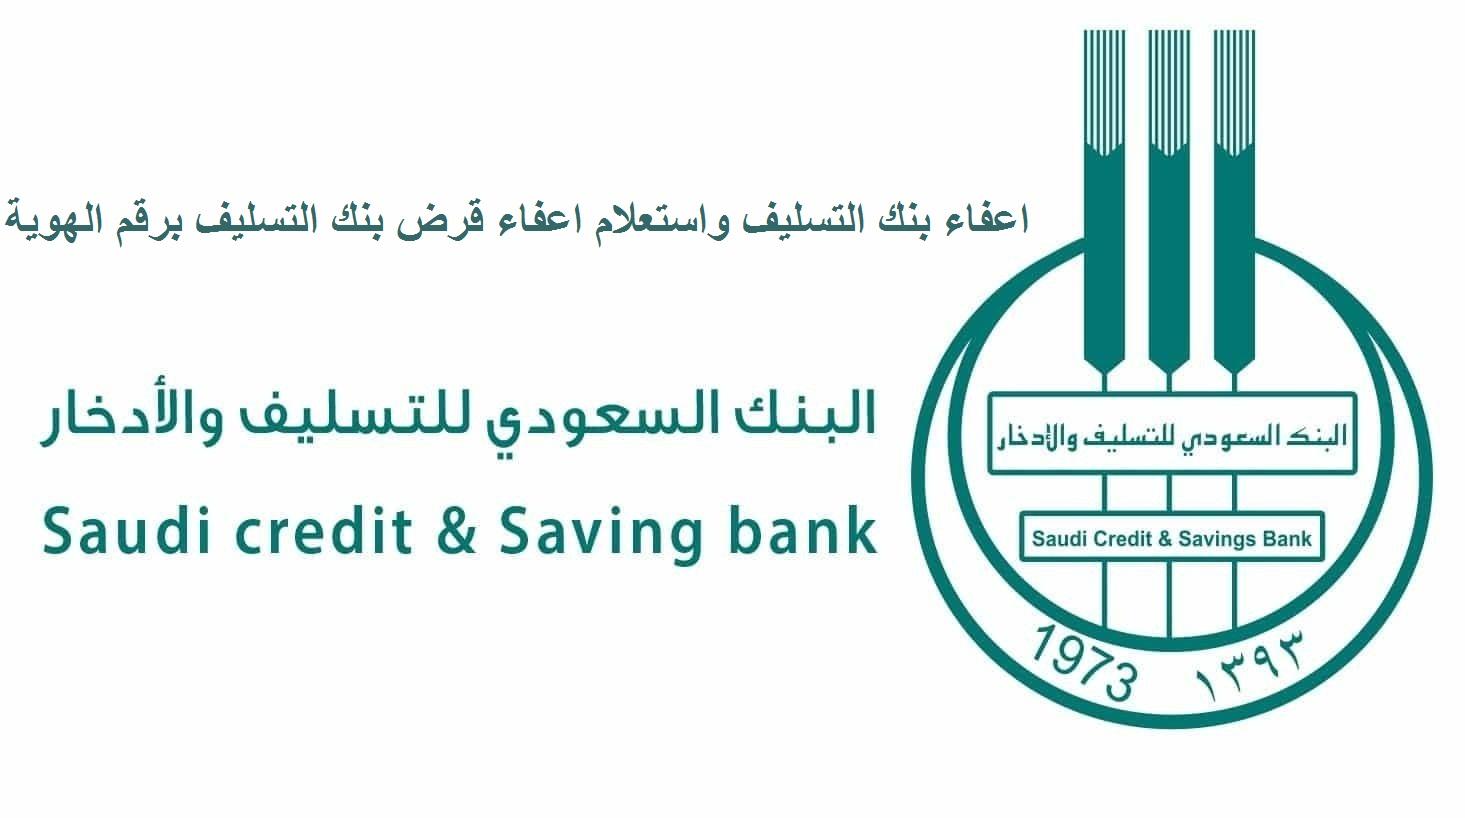 التفاصيل الجديدة حول إسقاط قرض بنك التسليف والادخار بالمملكة العربية السعودية 1441